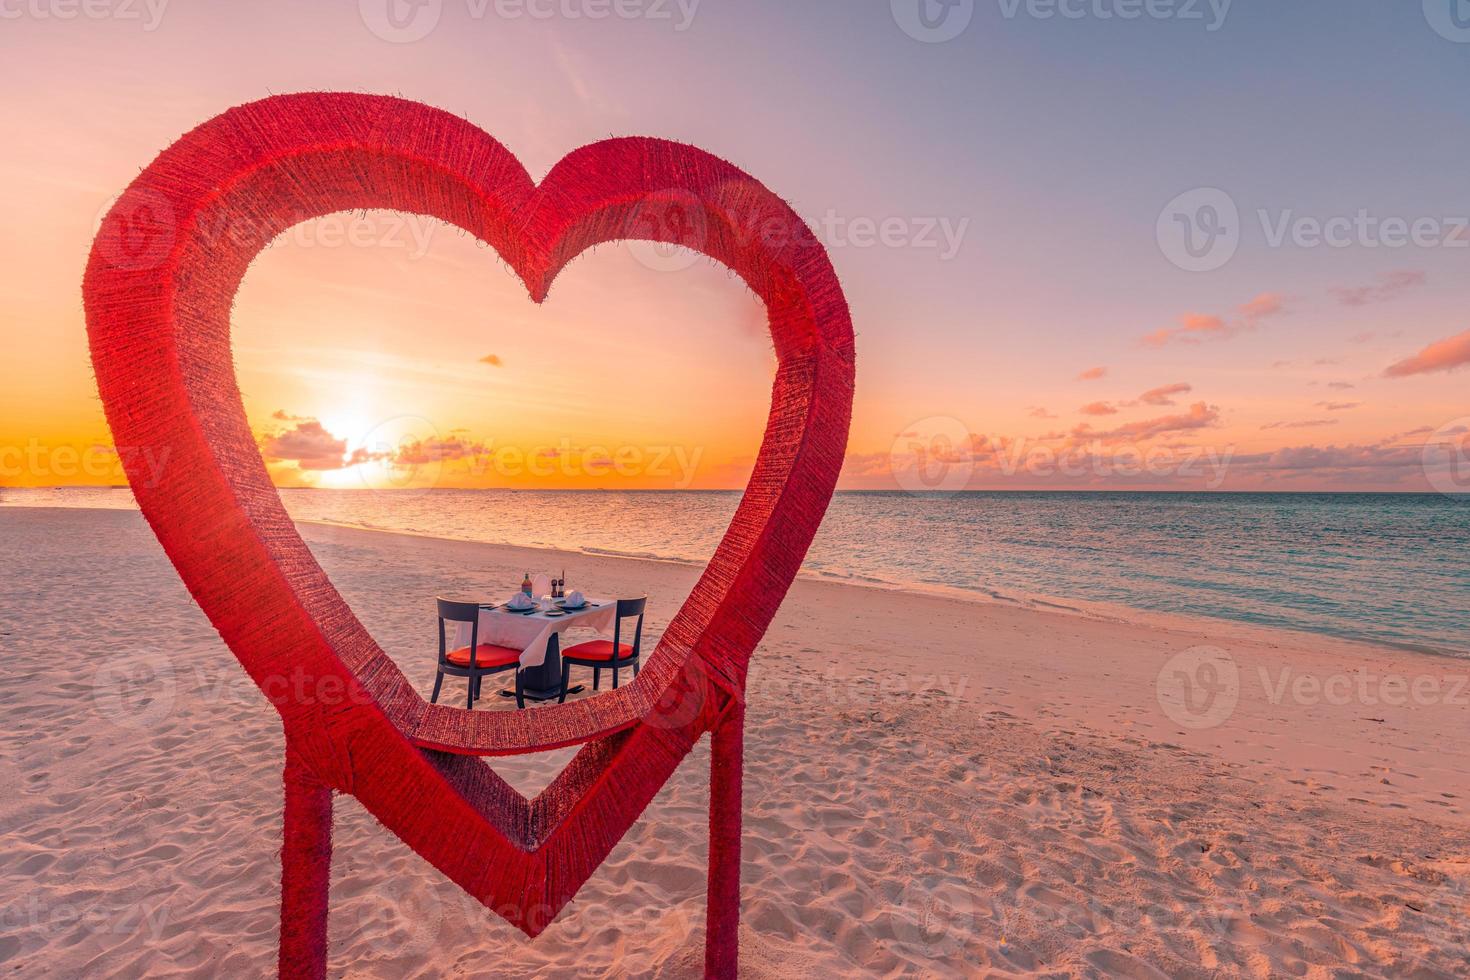 Abendessen für Flitterwochenpaare bei privatem, luxuriösem, romantischem Abendessen am tropischen Strand auf den Malediven. Meerblick, erstaunliche Inselküste mit roten herzförmigen Tischstühlen. romantisches Liebesziel foto